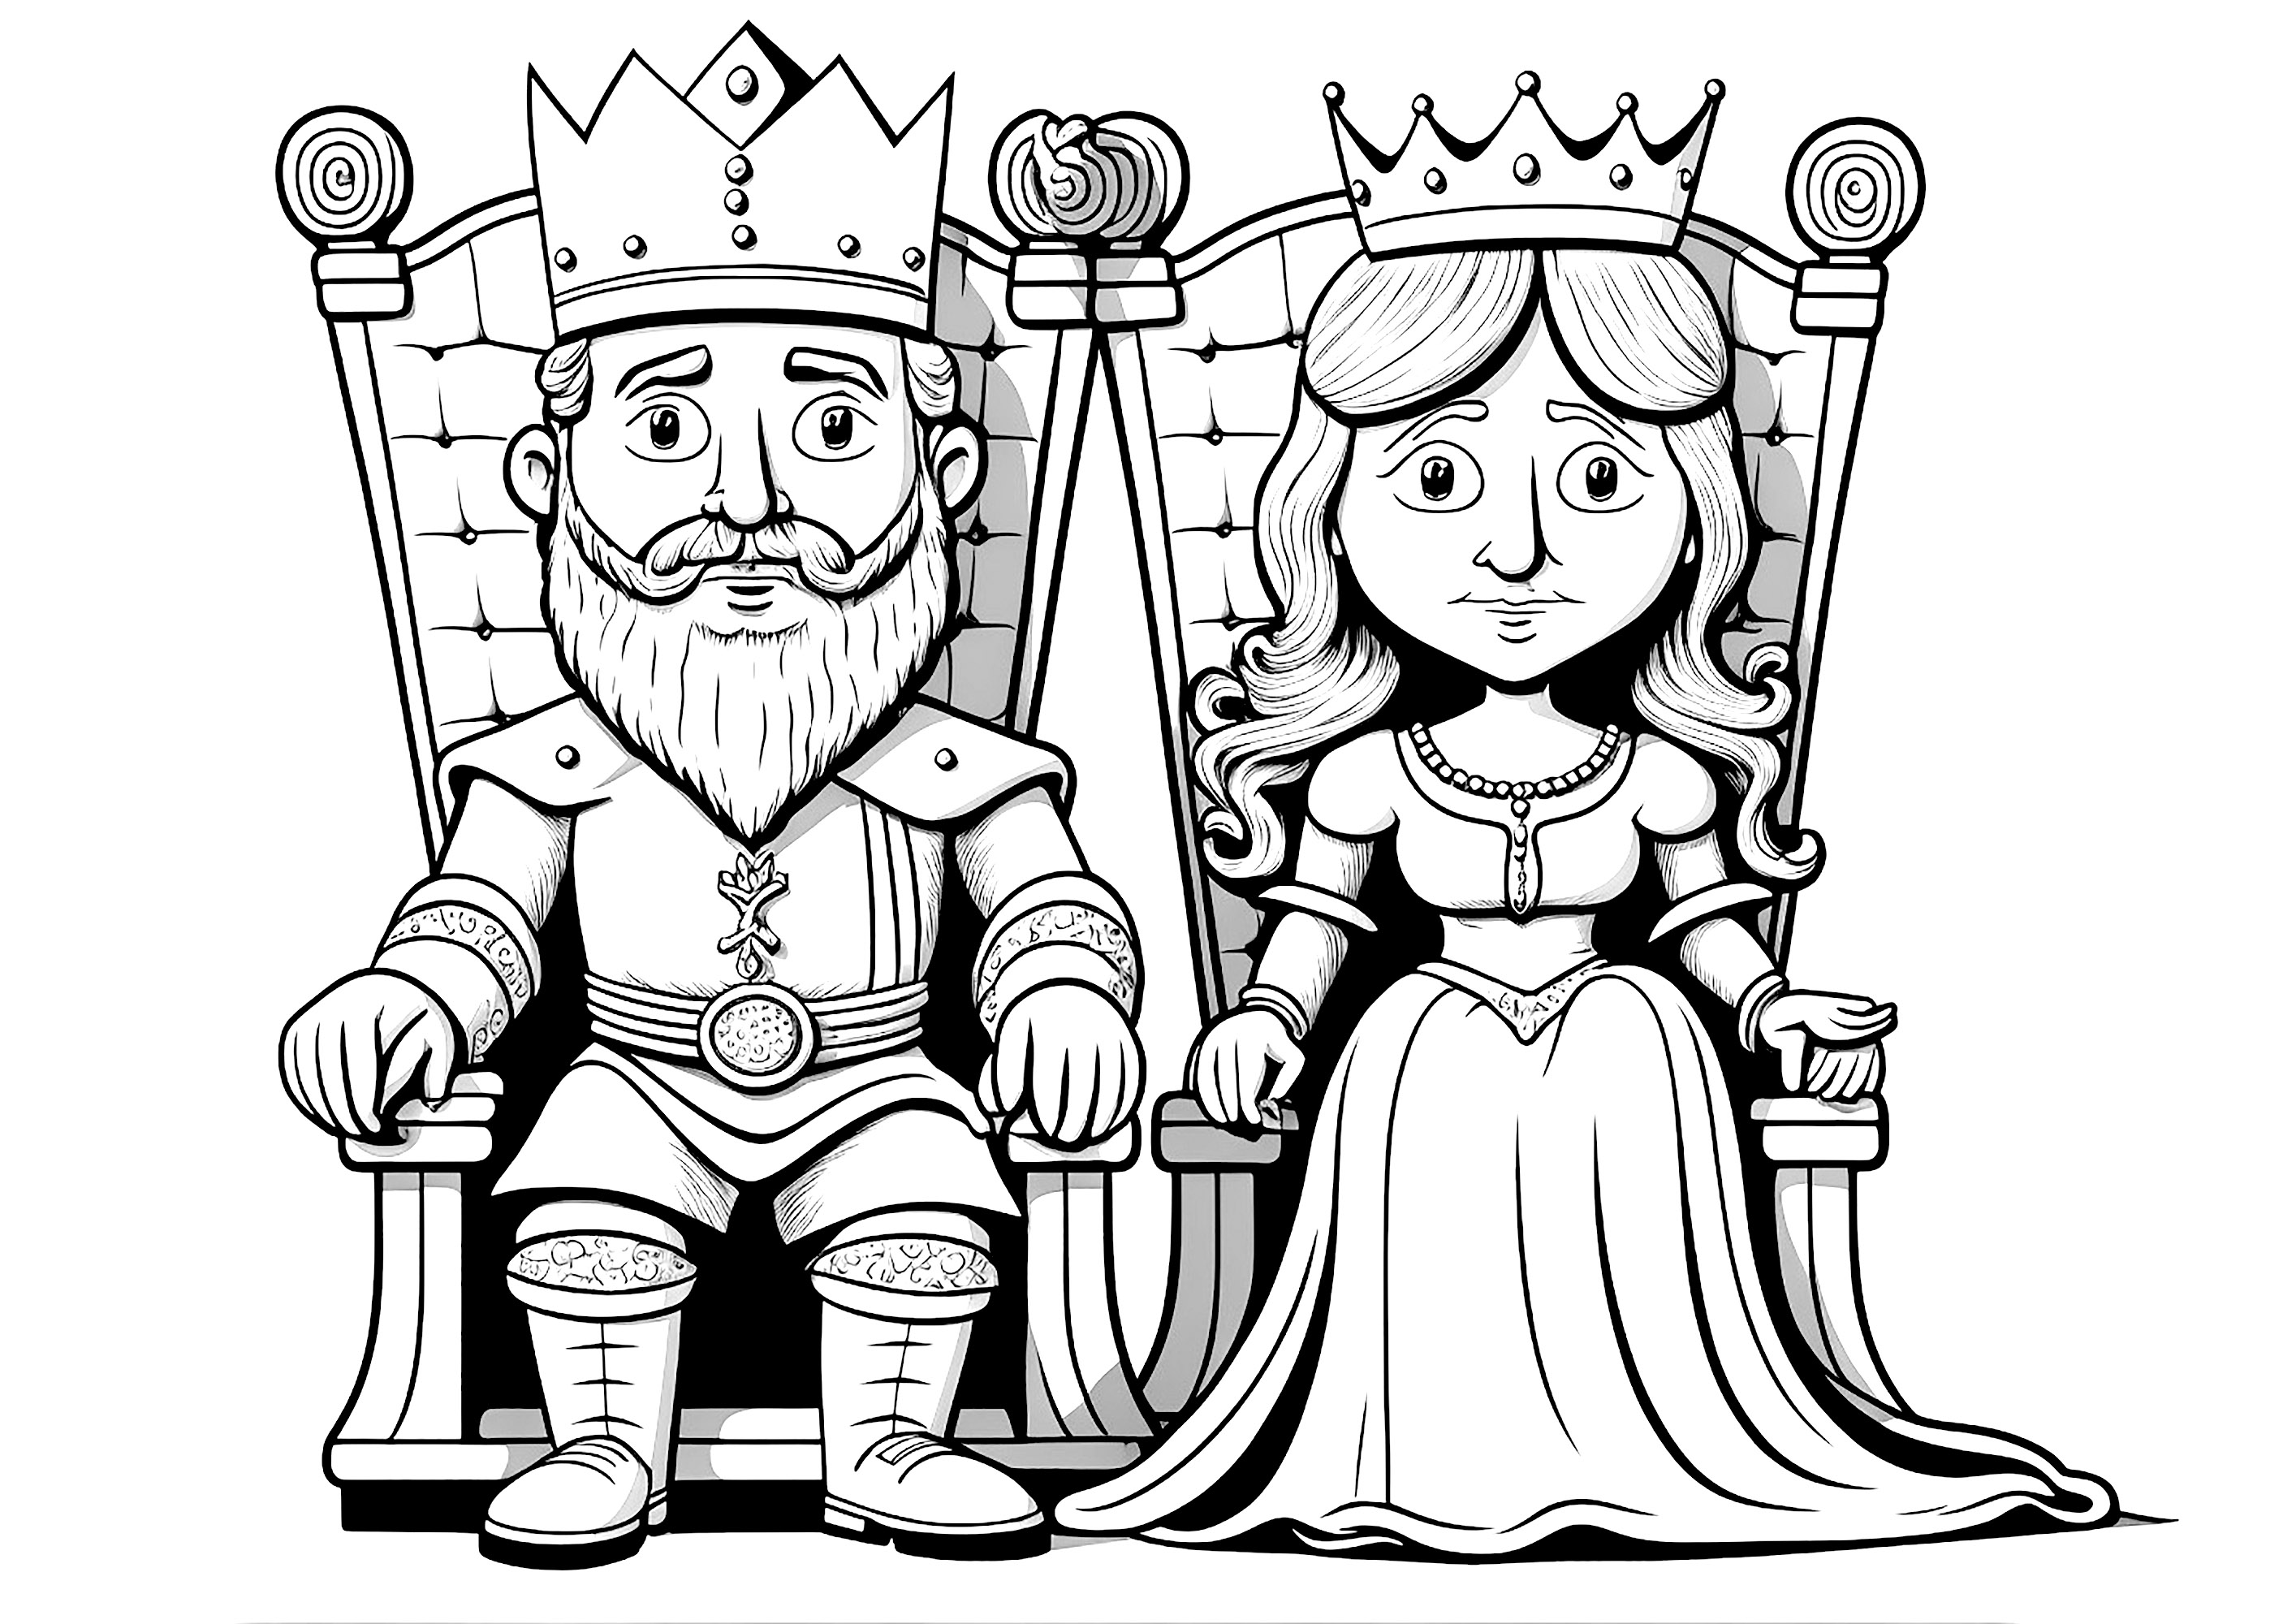 Casal real sentado nos seus tronos reais, parecendo muito sério